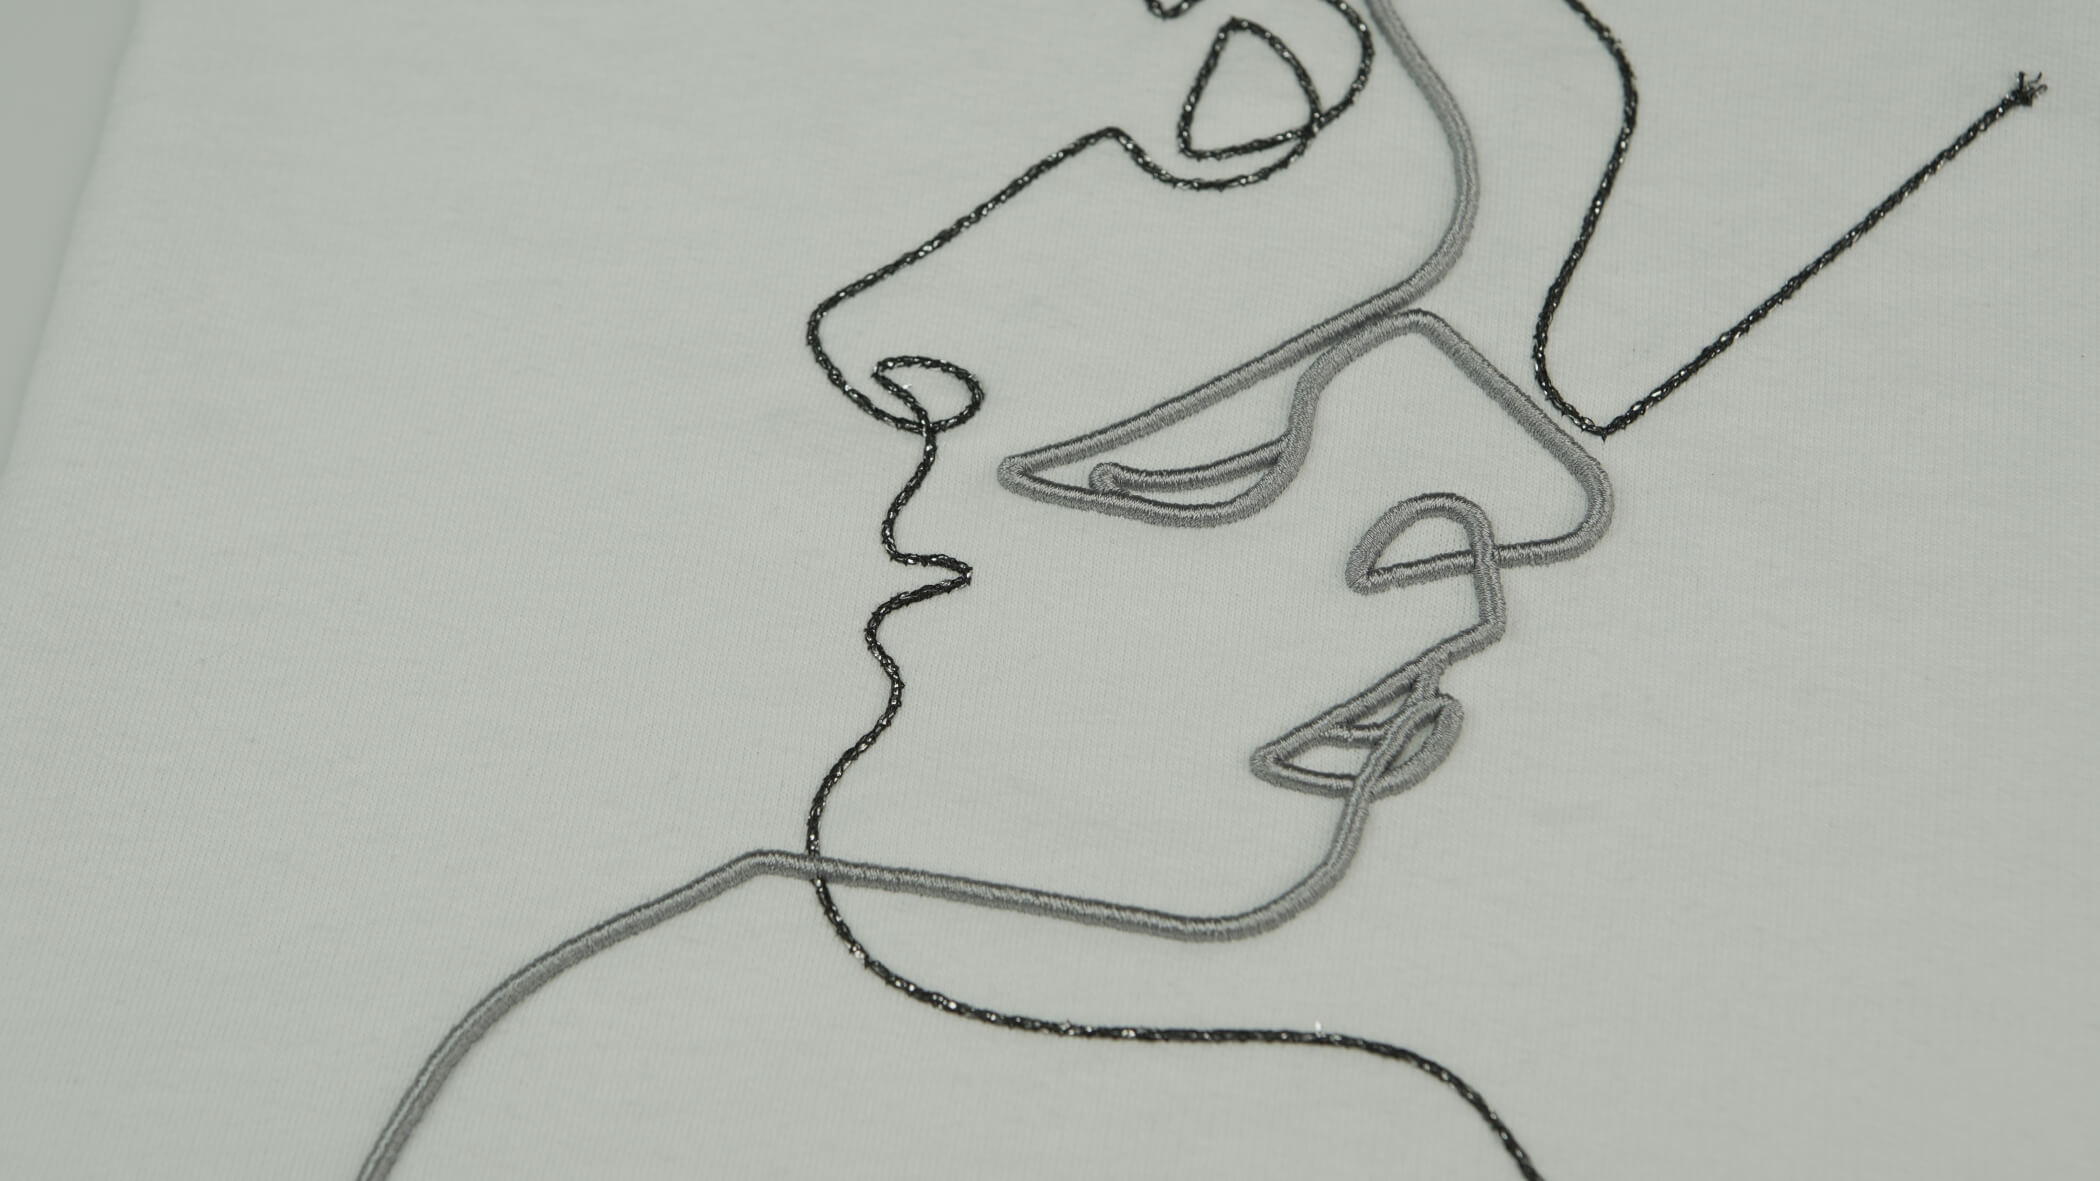 Dois rostos desenhados numa forma mais abstrata e um sob o outro, em cinzento e preto, com as técnicas de bordado com cordão e com correntes metálicas